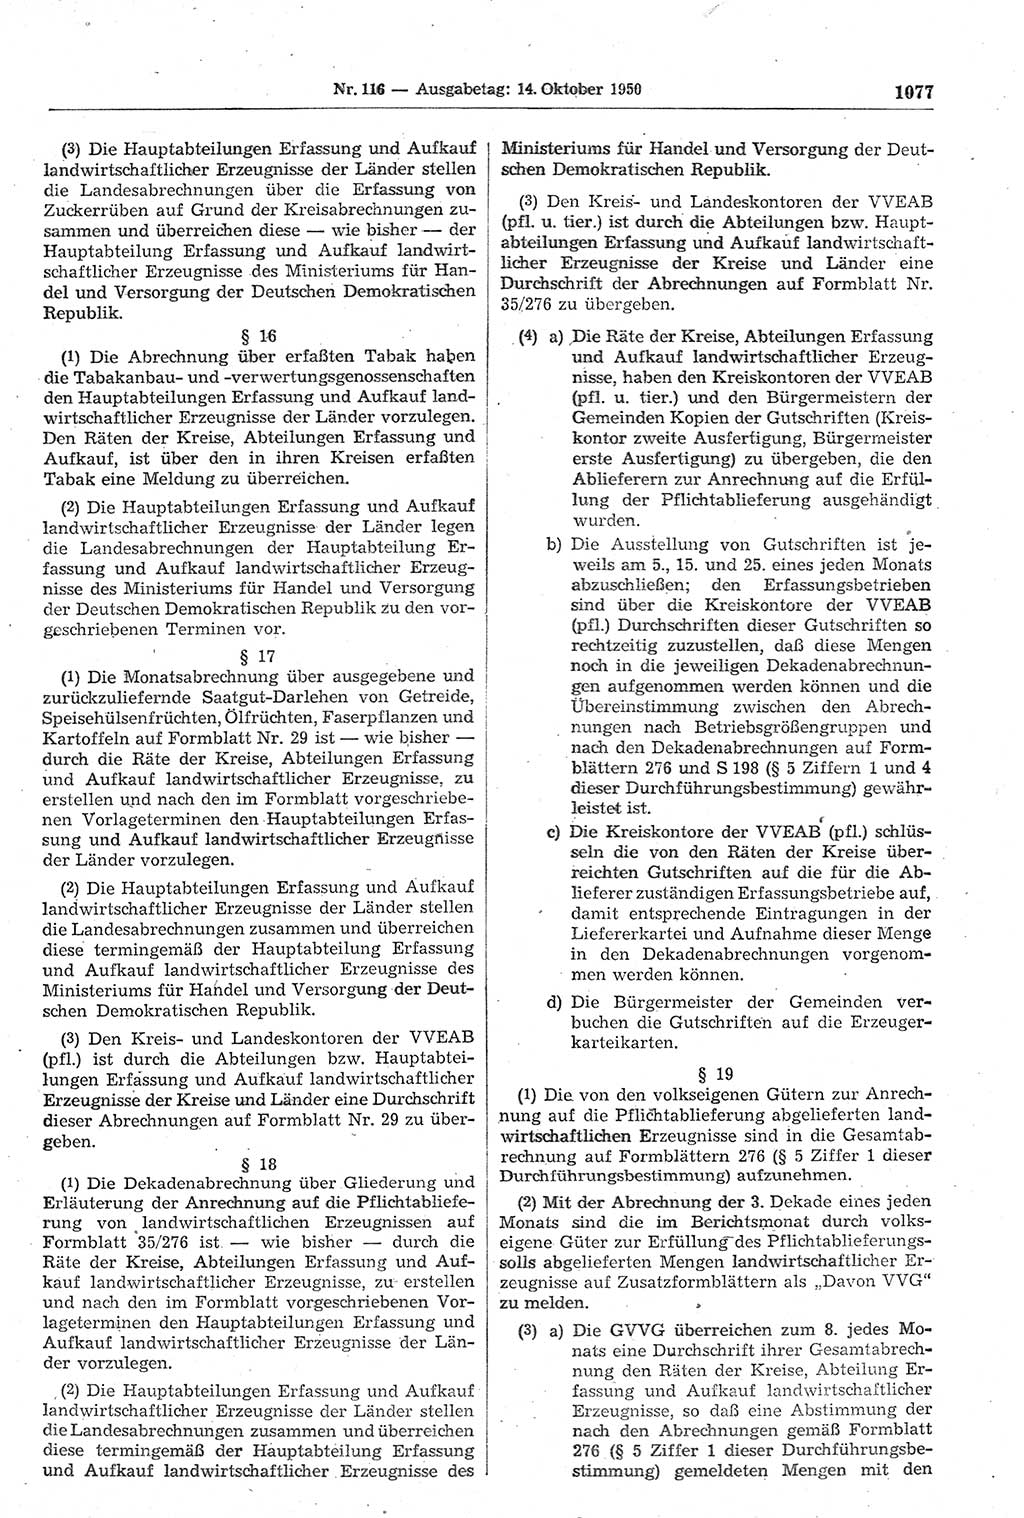 Gesetzblatt (GBl.) der Deutschen Demokratischen Republik (DDR) 1950, Seite 1077 (GBl. DDR 1950, S. 1077)